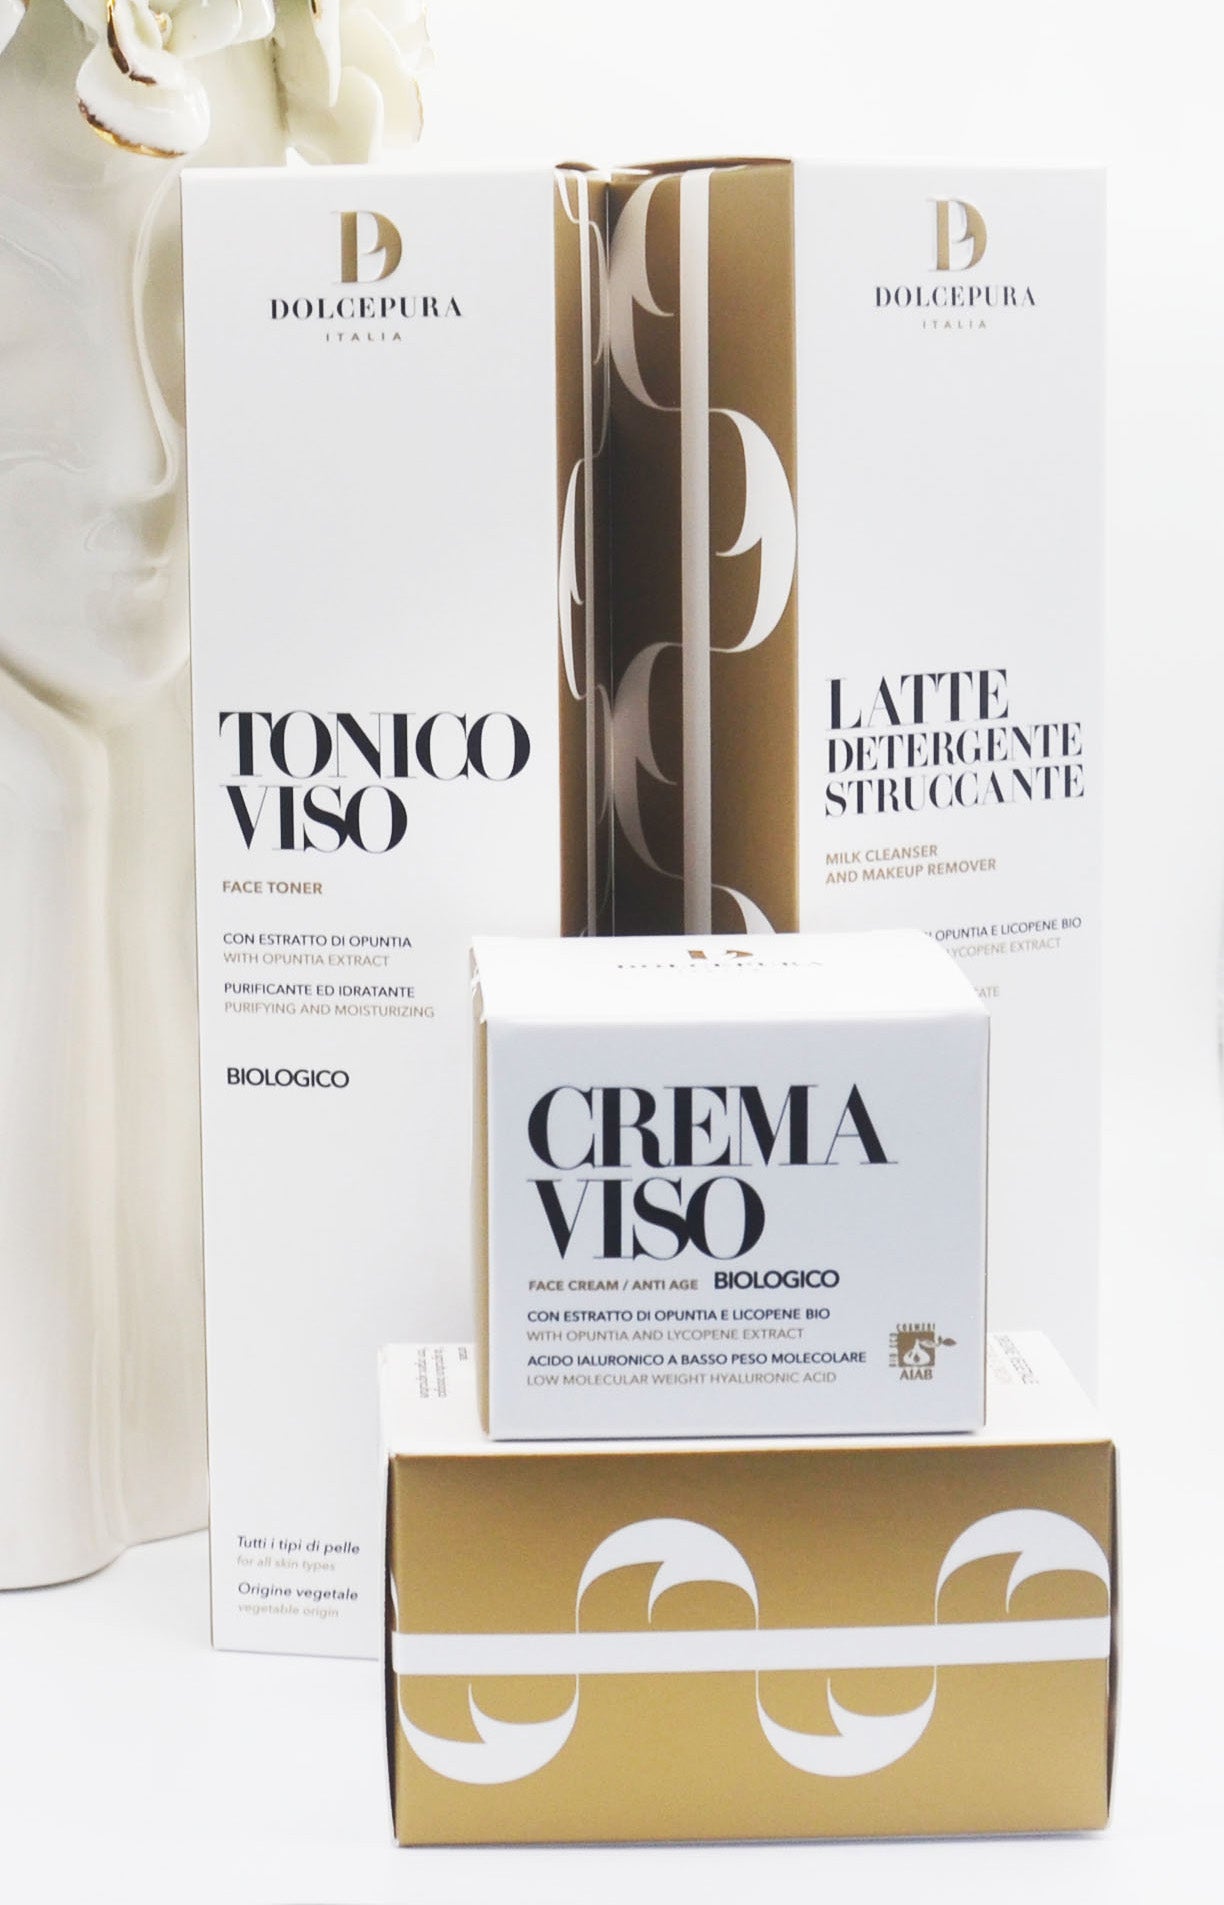 VISO-Set "UNICA" Reinigungs milch, Tonic und Bio-Creme (Opuntia und Lycopin) der kleinen italienischen Produktion